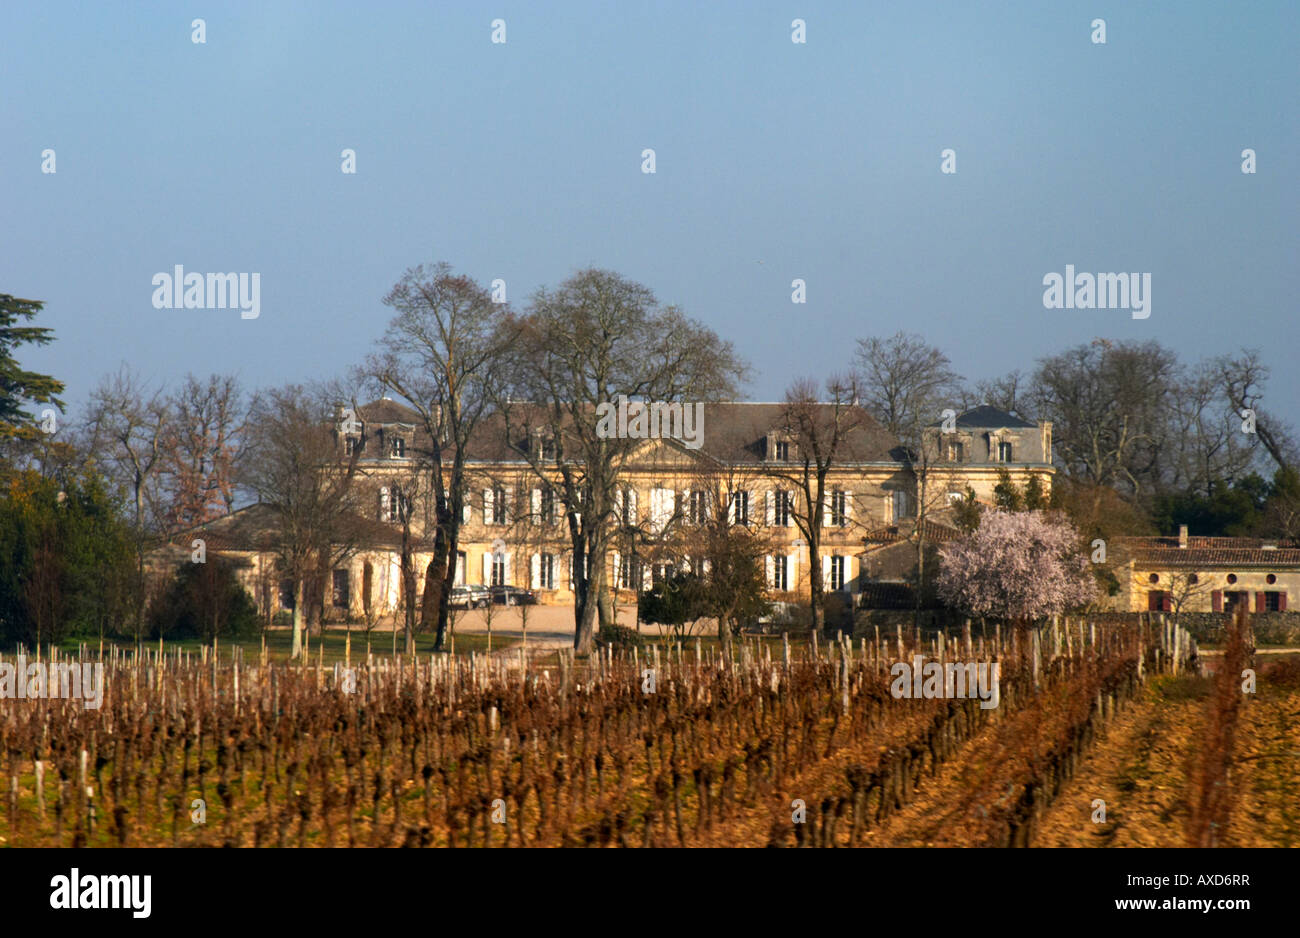 Vineyard. Chateau Soutard. Saint Emilion, Bordeaux, France Stock Photo